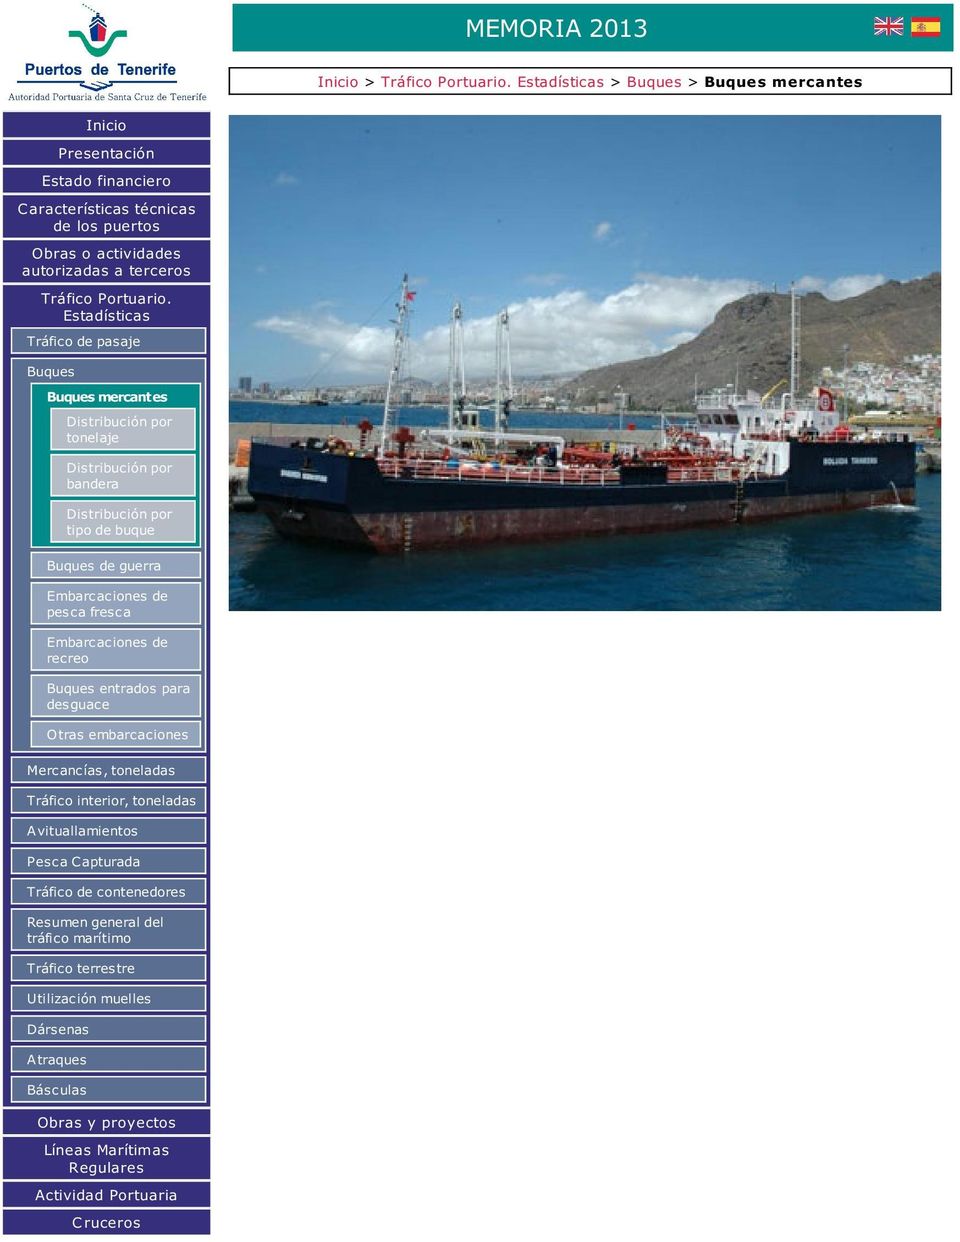 Estadísticas Tráfico de pasaje Buques Buques mercantes Distribución por tonelaje Distribución por bandera Distribución por tipo de buque Buques de guerra Embarcaciones de pesca fresca